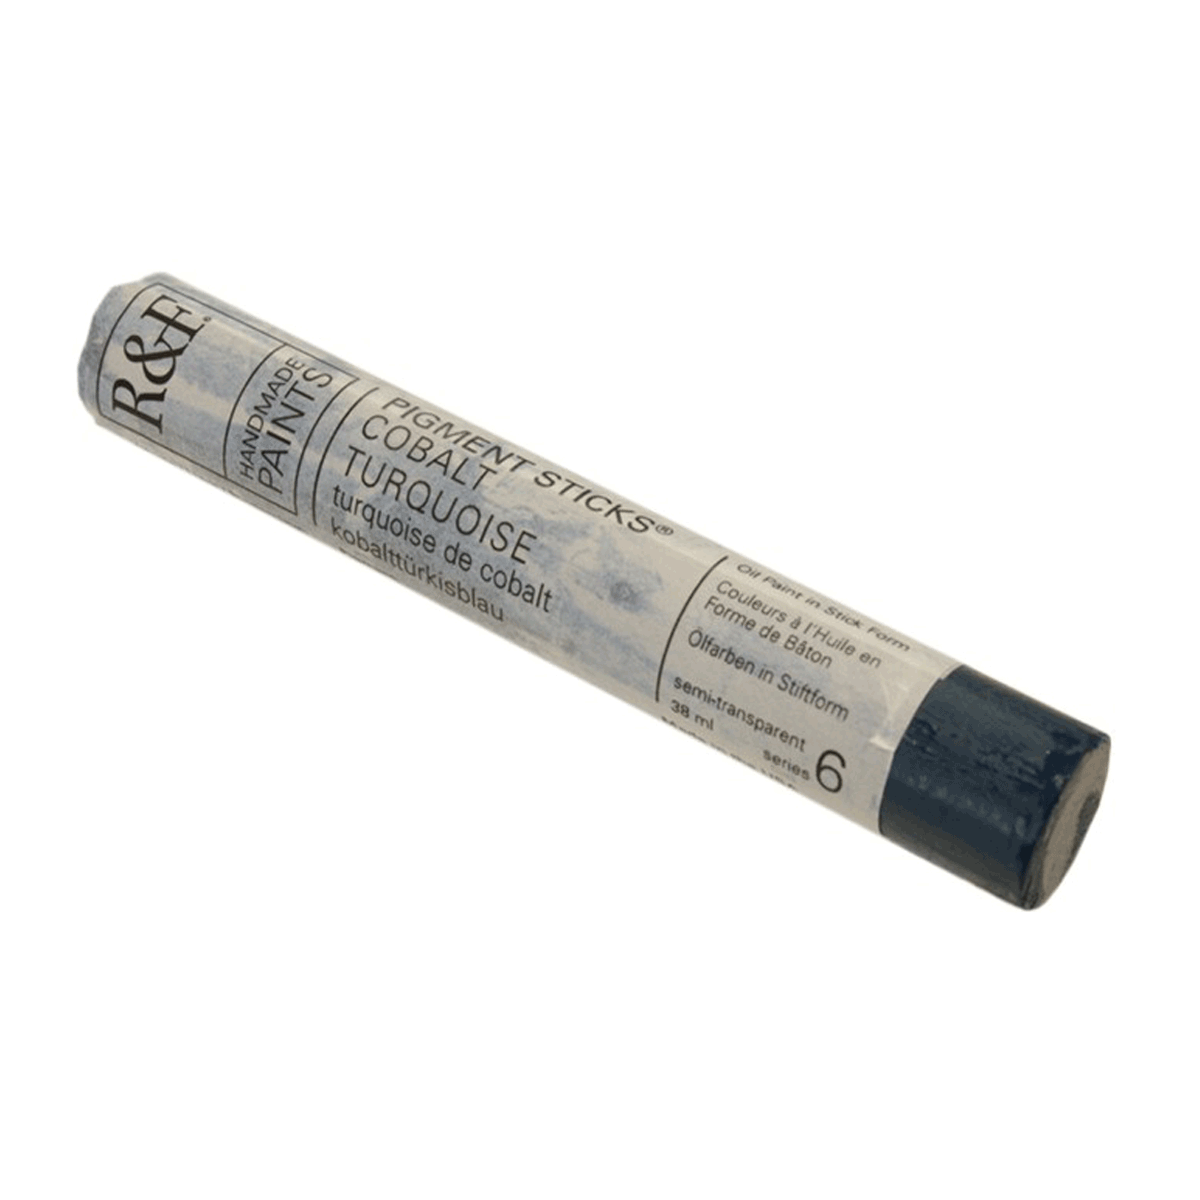 R&F Oil Pigment Stick, Cobalt Turquoise 38ml